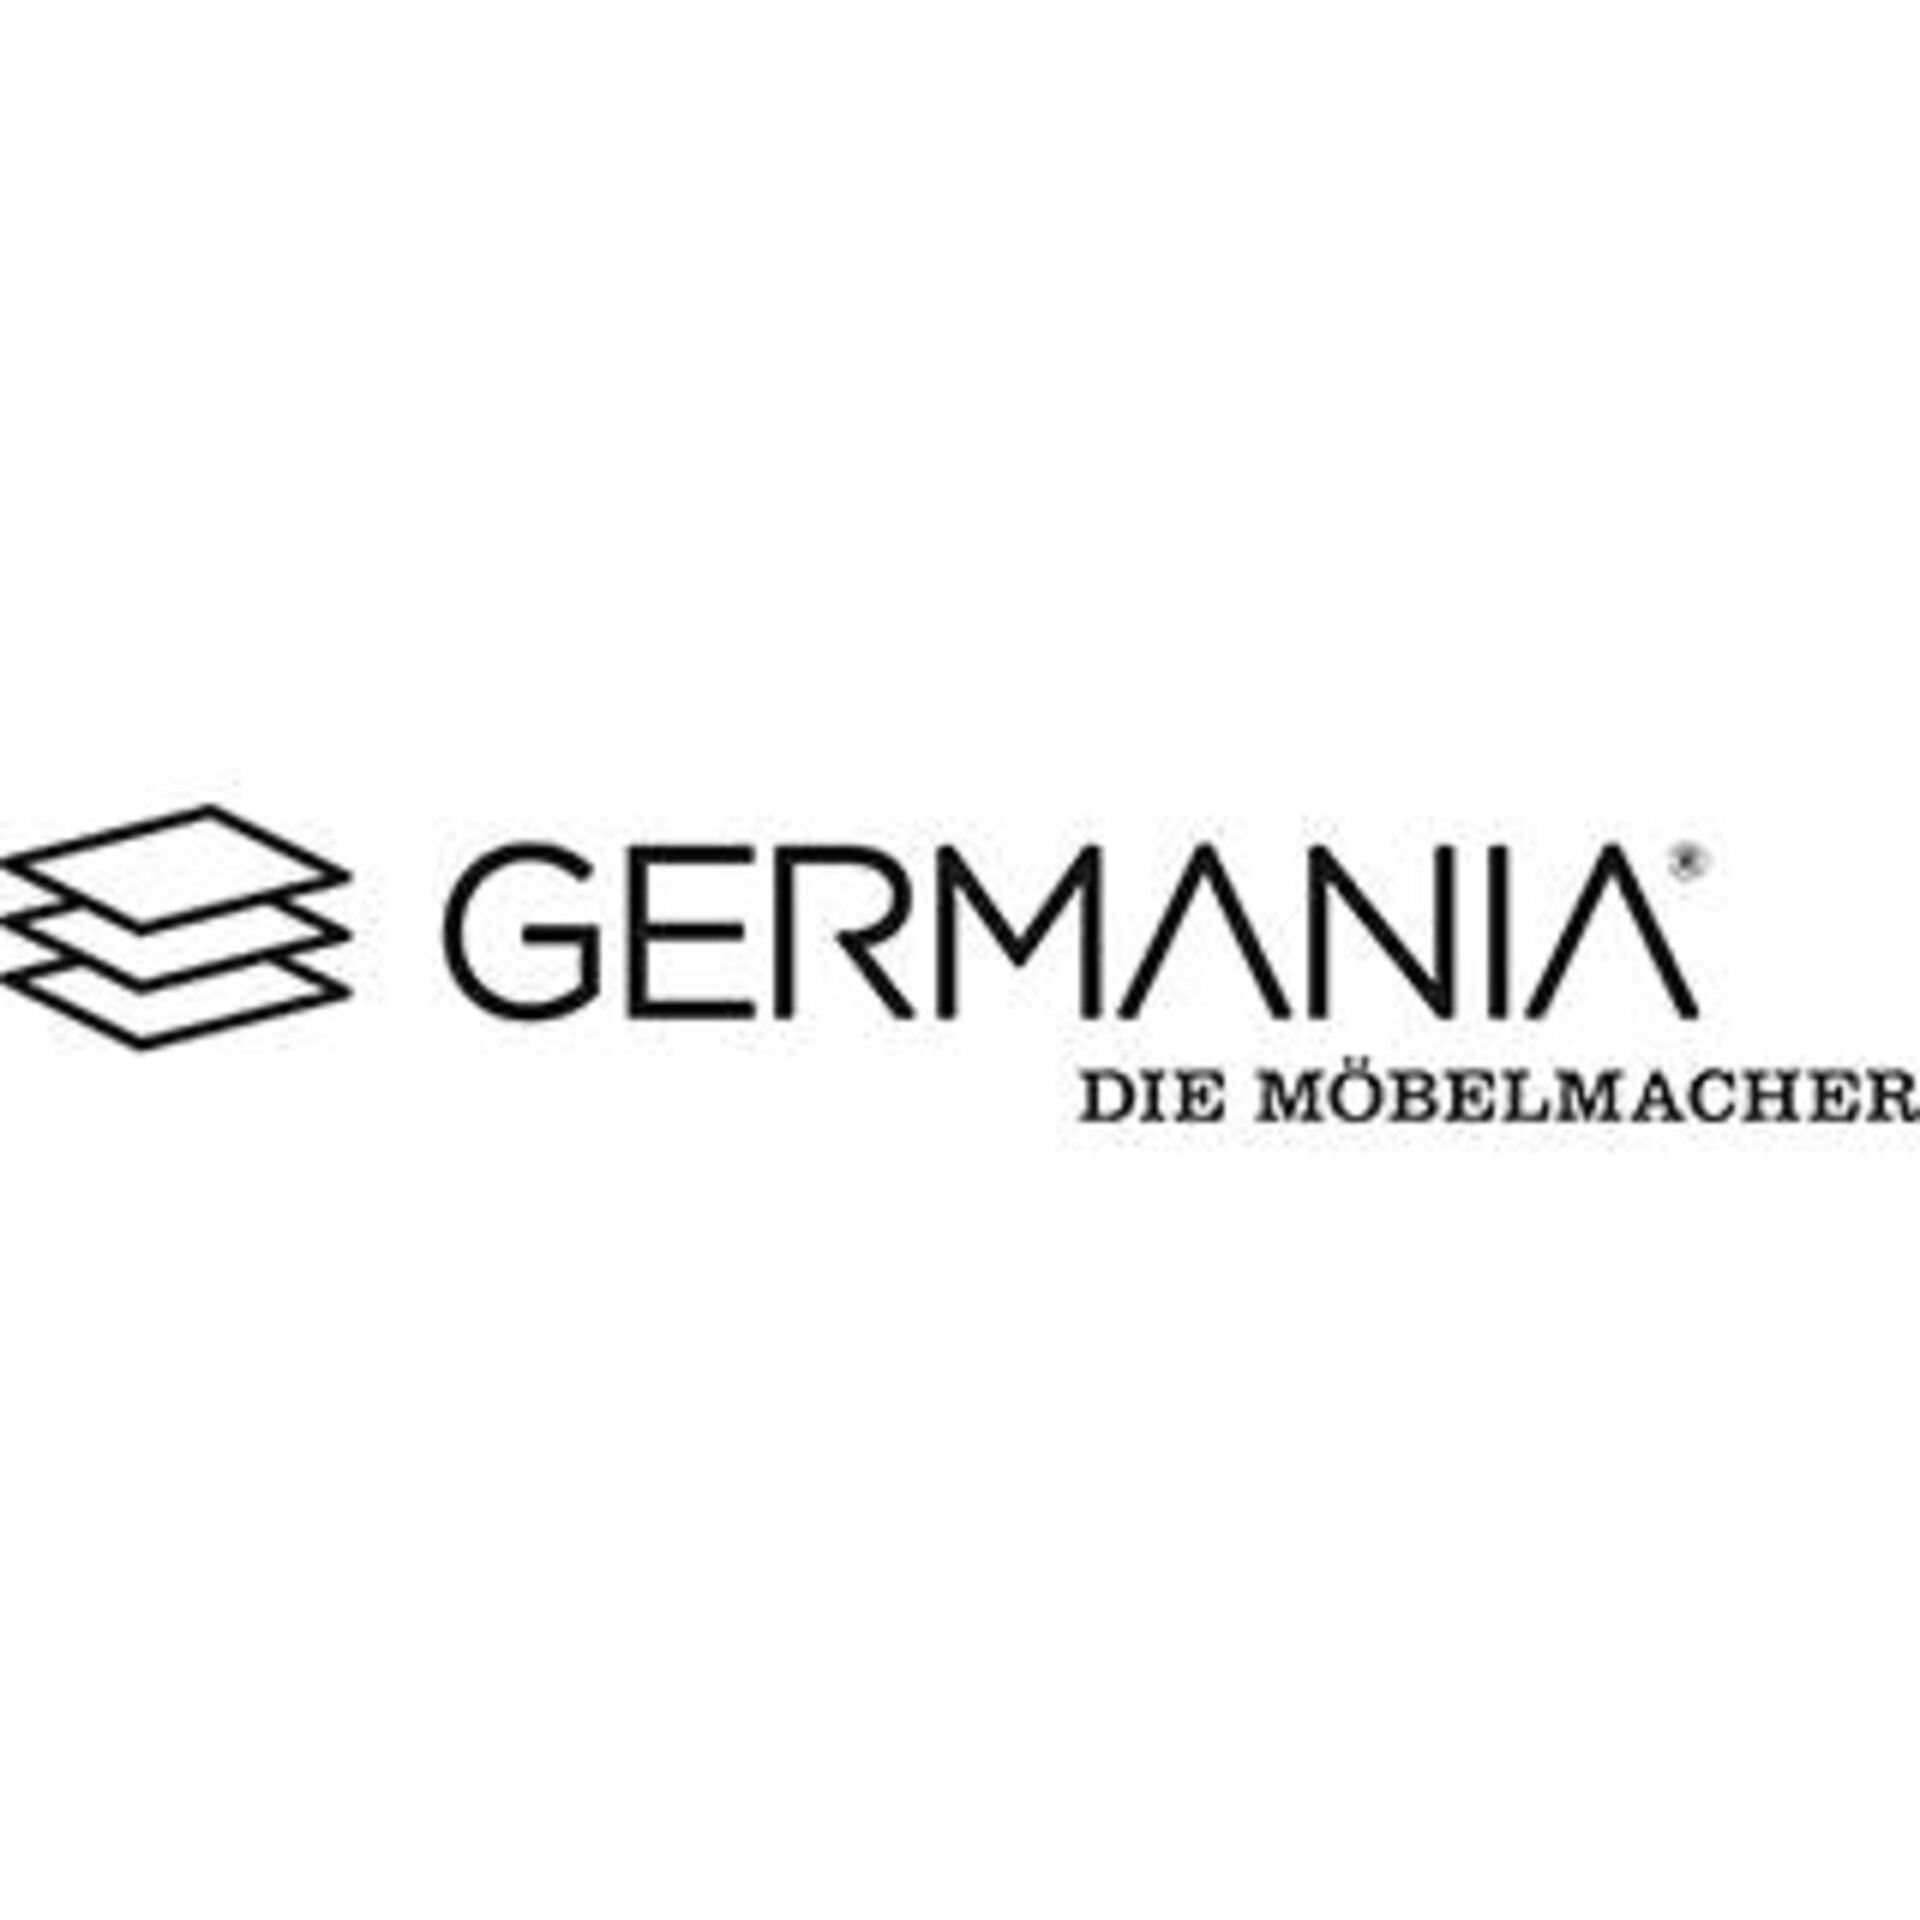 "GERMANIA - Die Möbelmacher" Logo